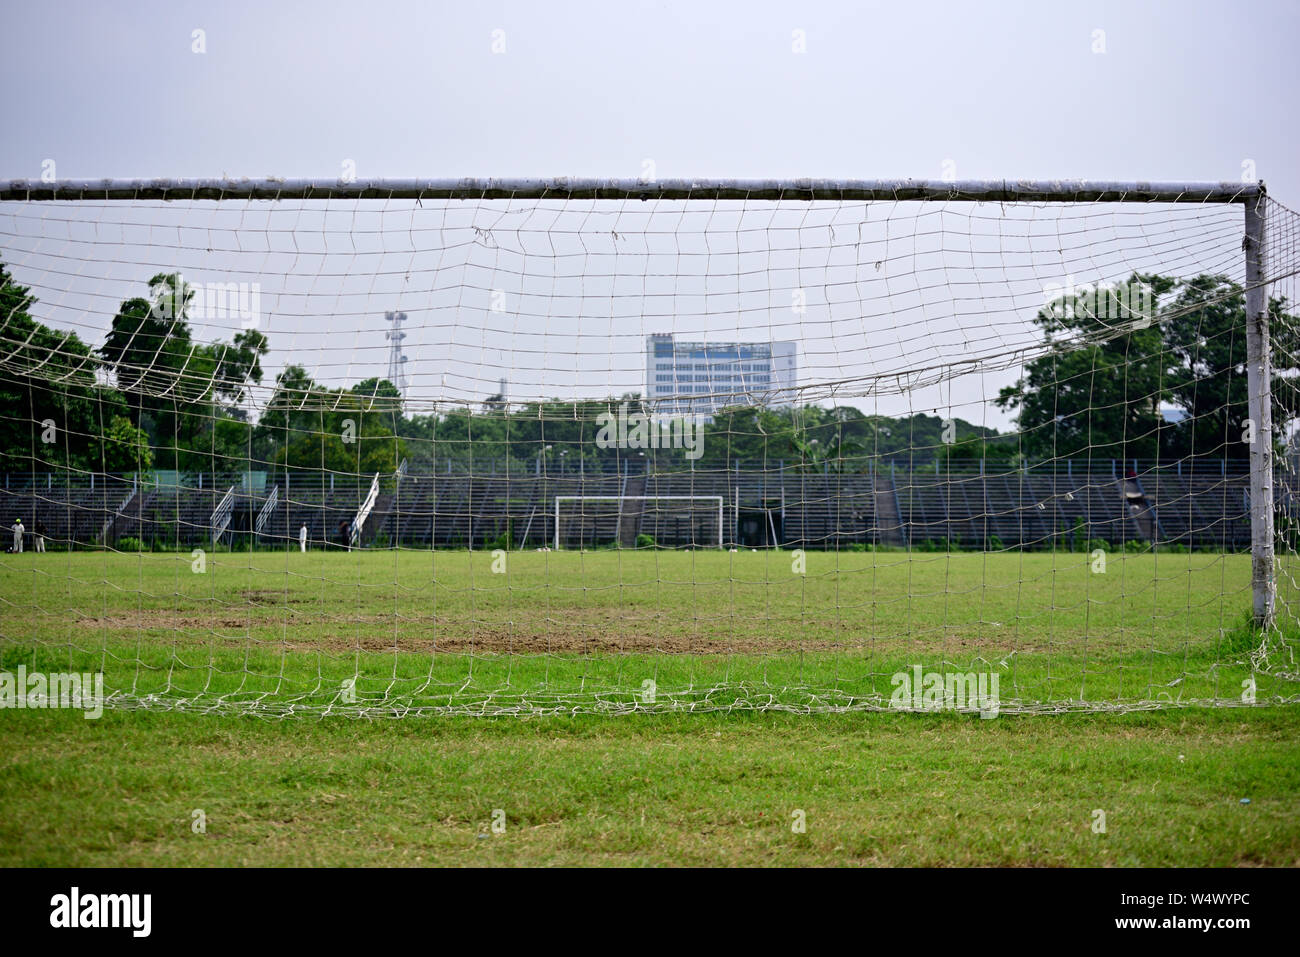 Terrain de soccer vide dans un complexe sportif, l'image est capturée à l'origine de buts de soccer. Banque D'Images